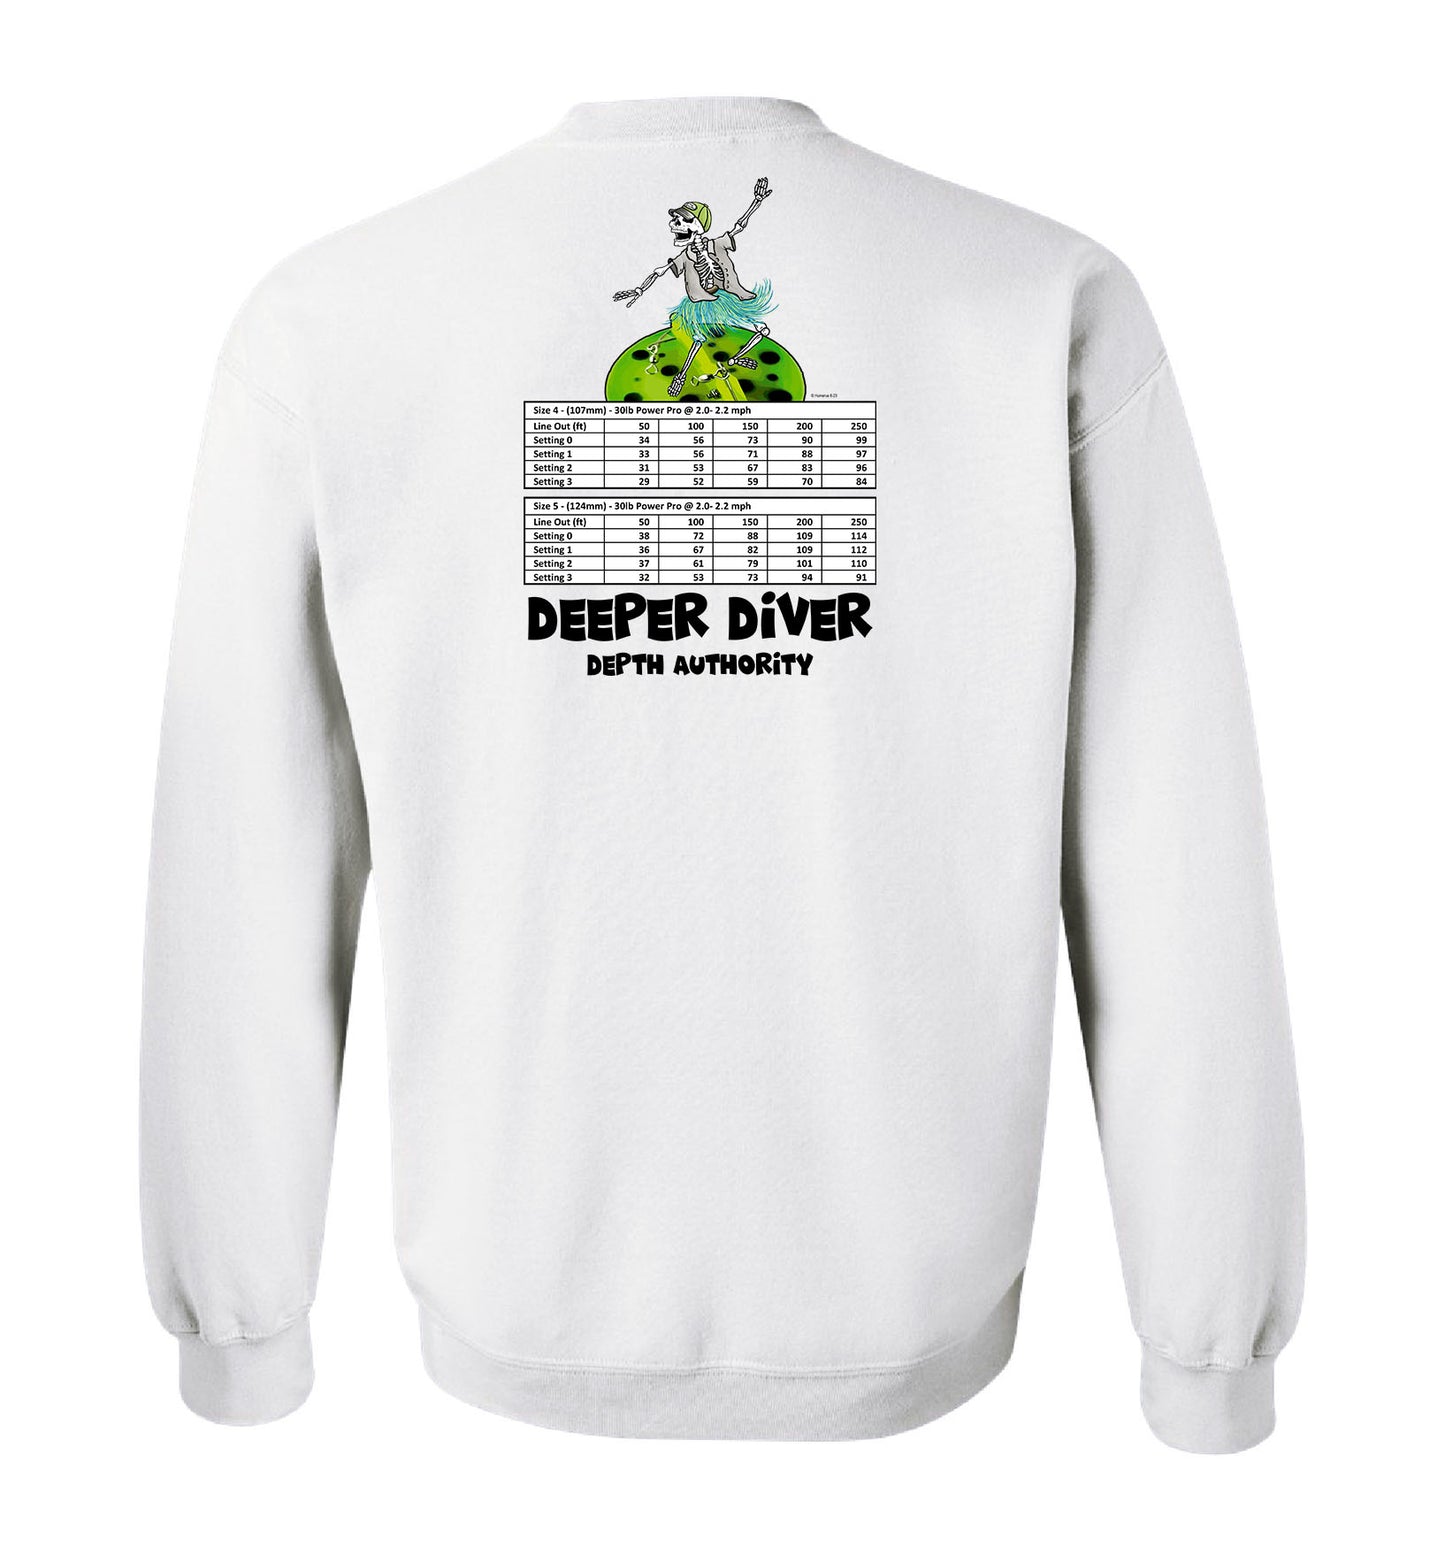 Deeper Diver Depth Authority - Unisex Creweck Sweatshirt